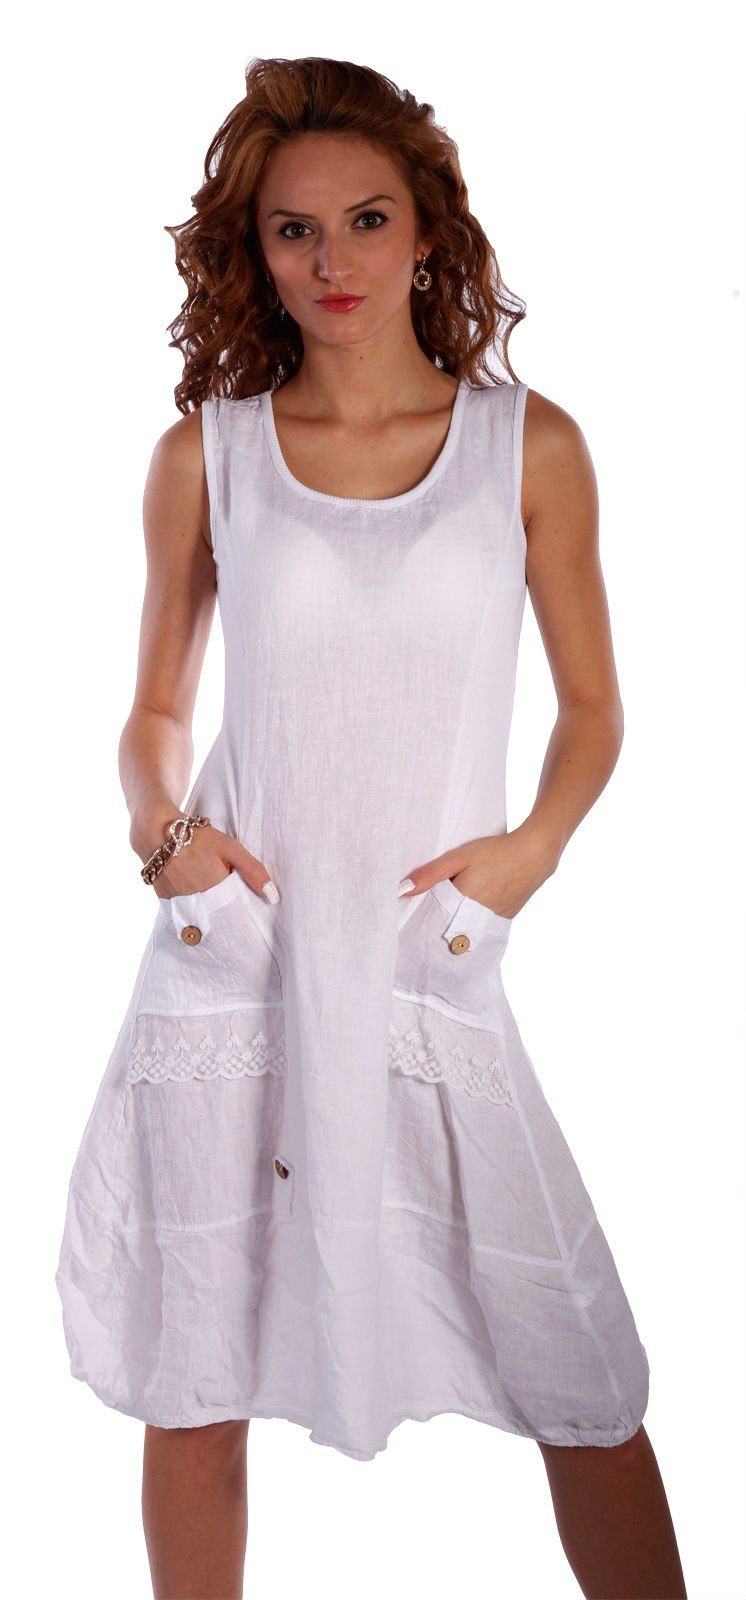 Charis Moda Sommerkleid Leinen Kleid ärmellos mit schönen Details Weiß